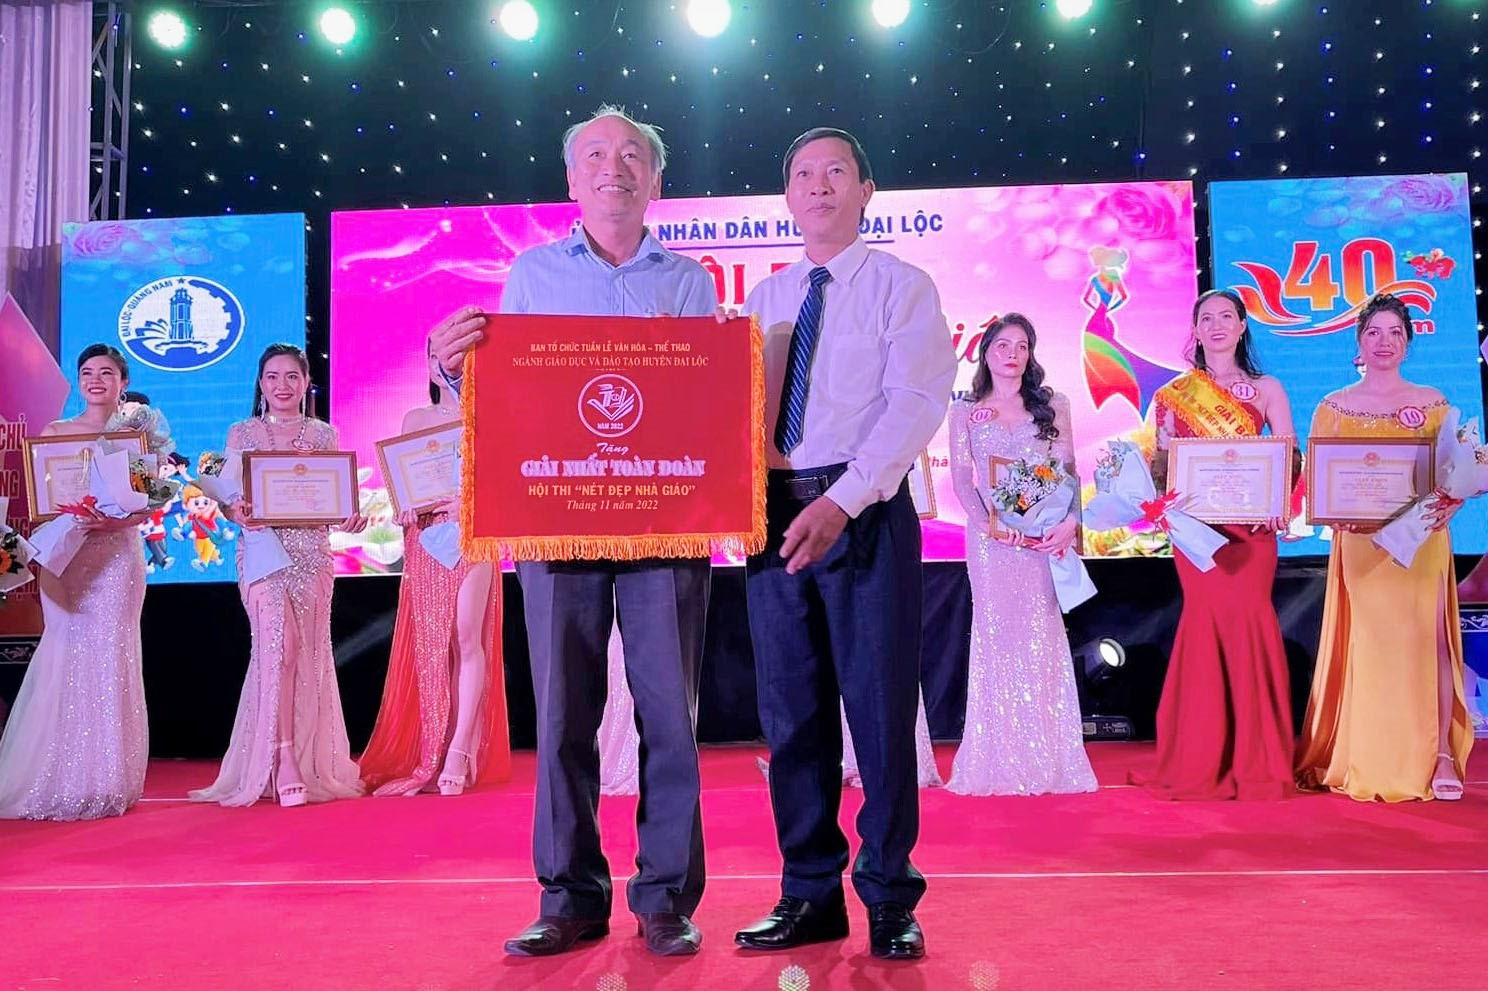 Thầy giáo Lê Văn Tài thay mặt trường nhận giải tại hội thi “Nét đẹp nhà giáo” do huyện Đại Lộc tổ chức. Ảnh:PT